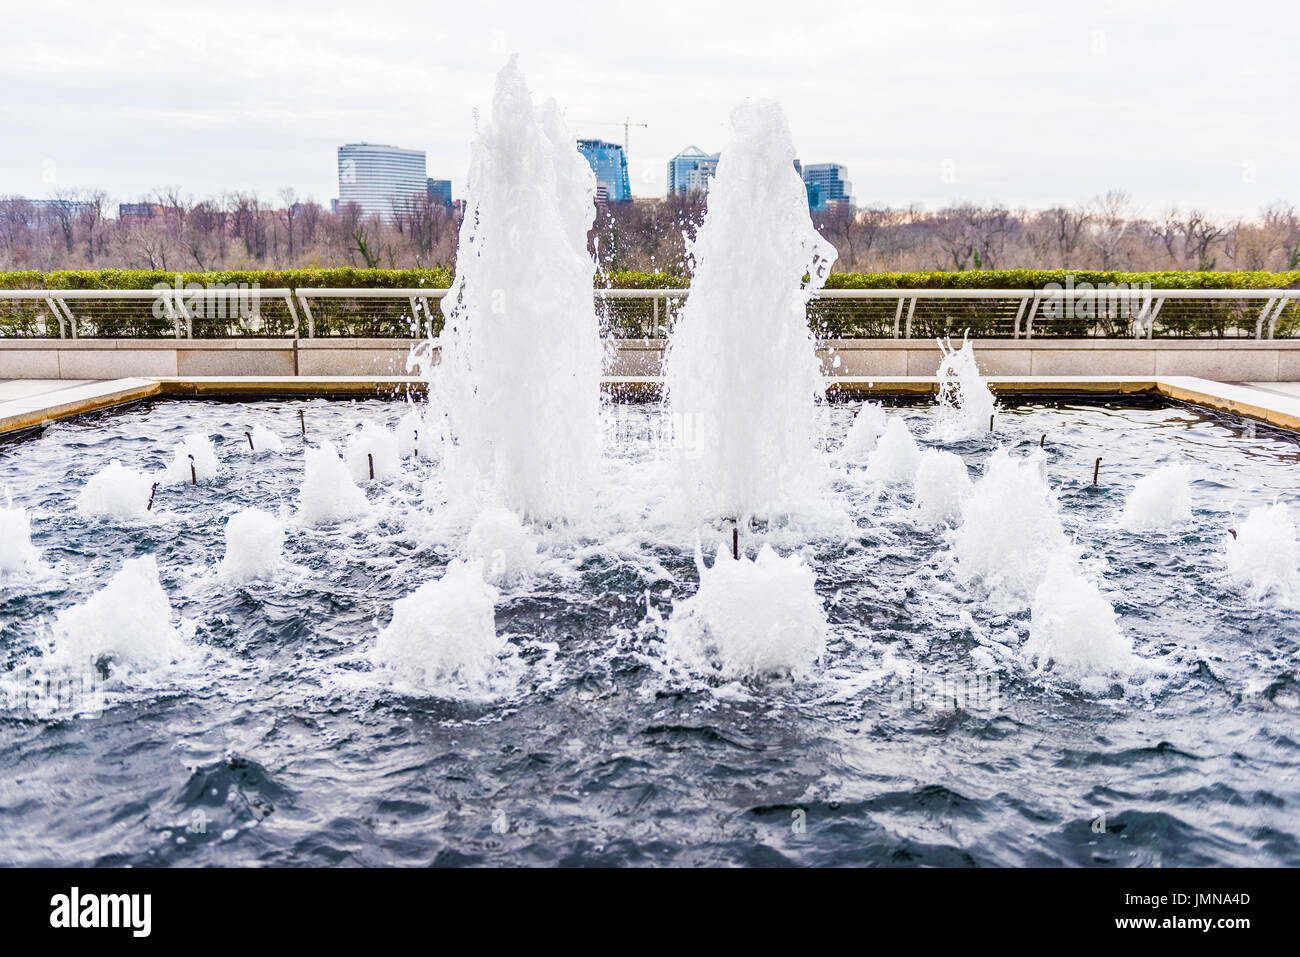 Washington DC, USA - 20 mars 2017 : John F. Kennedy Centre à l'extérieur terrasse avec fontaine d'eau Gros plan Banque D'Images